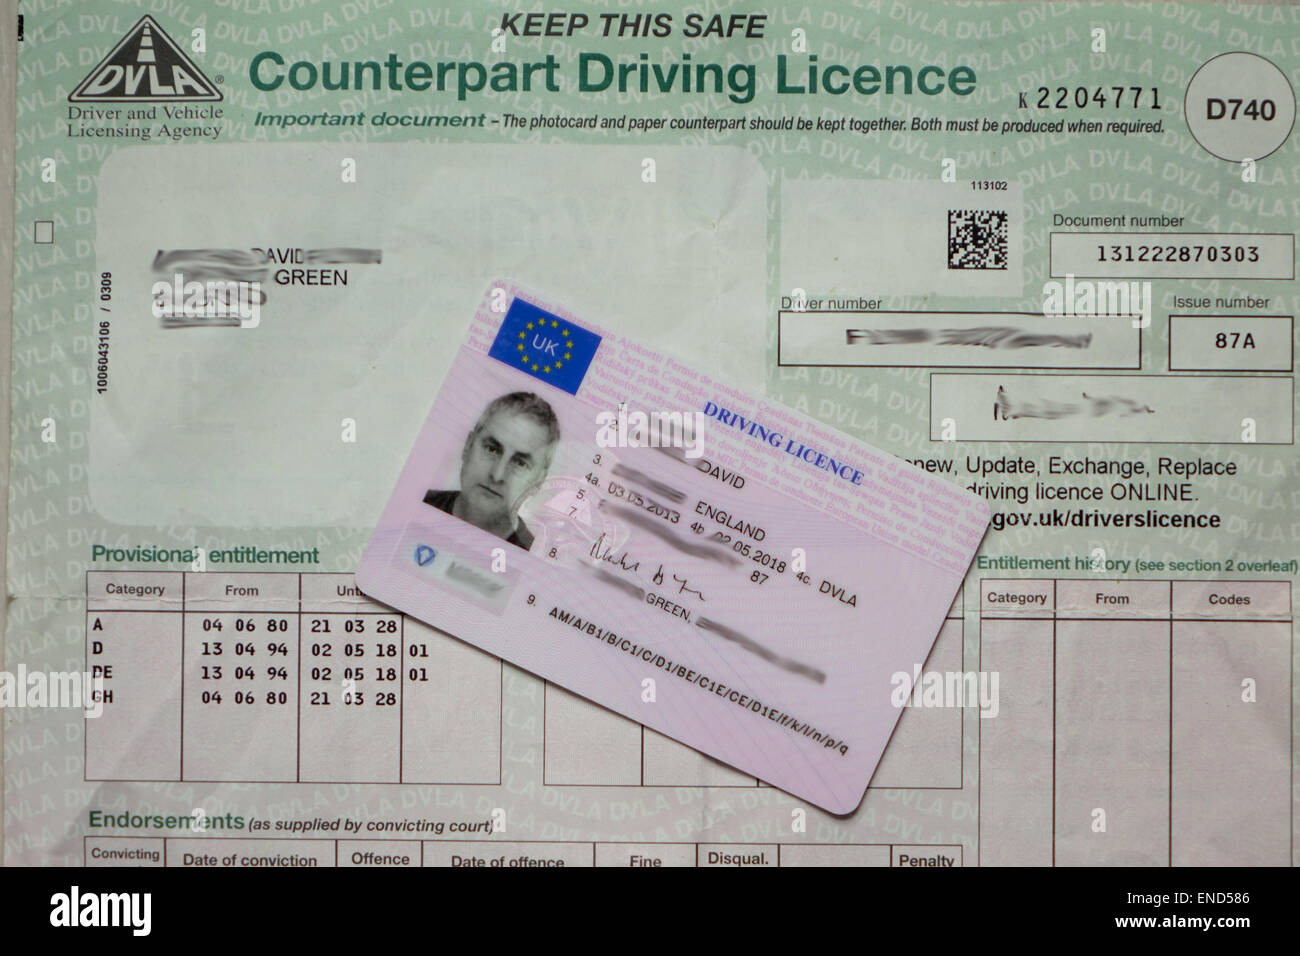 Permis de conduire au Royaume-Uni en papier sera supprimée de juin 2015. Les détails des condamnations seront conservés sur la base de données de la DVLA Banque D'Images